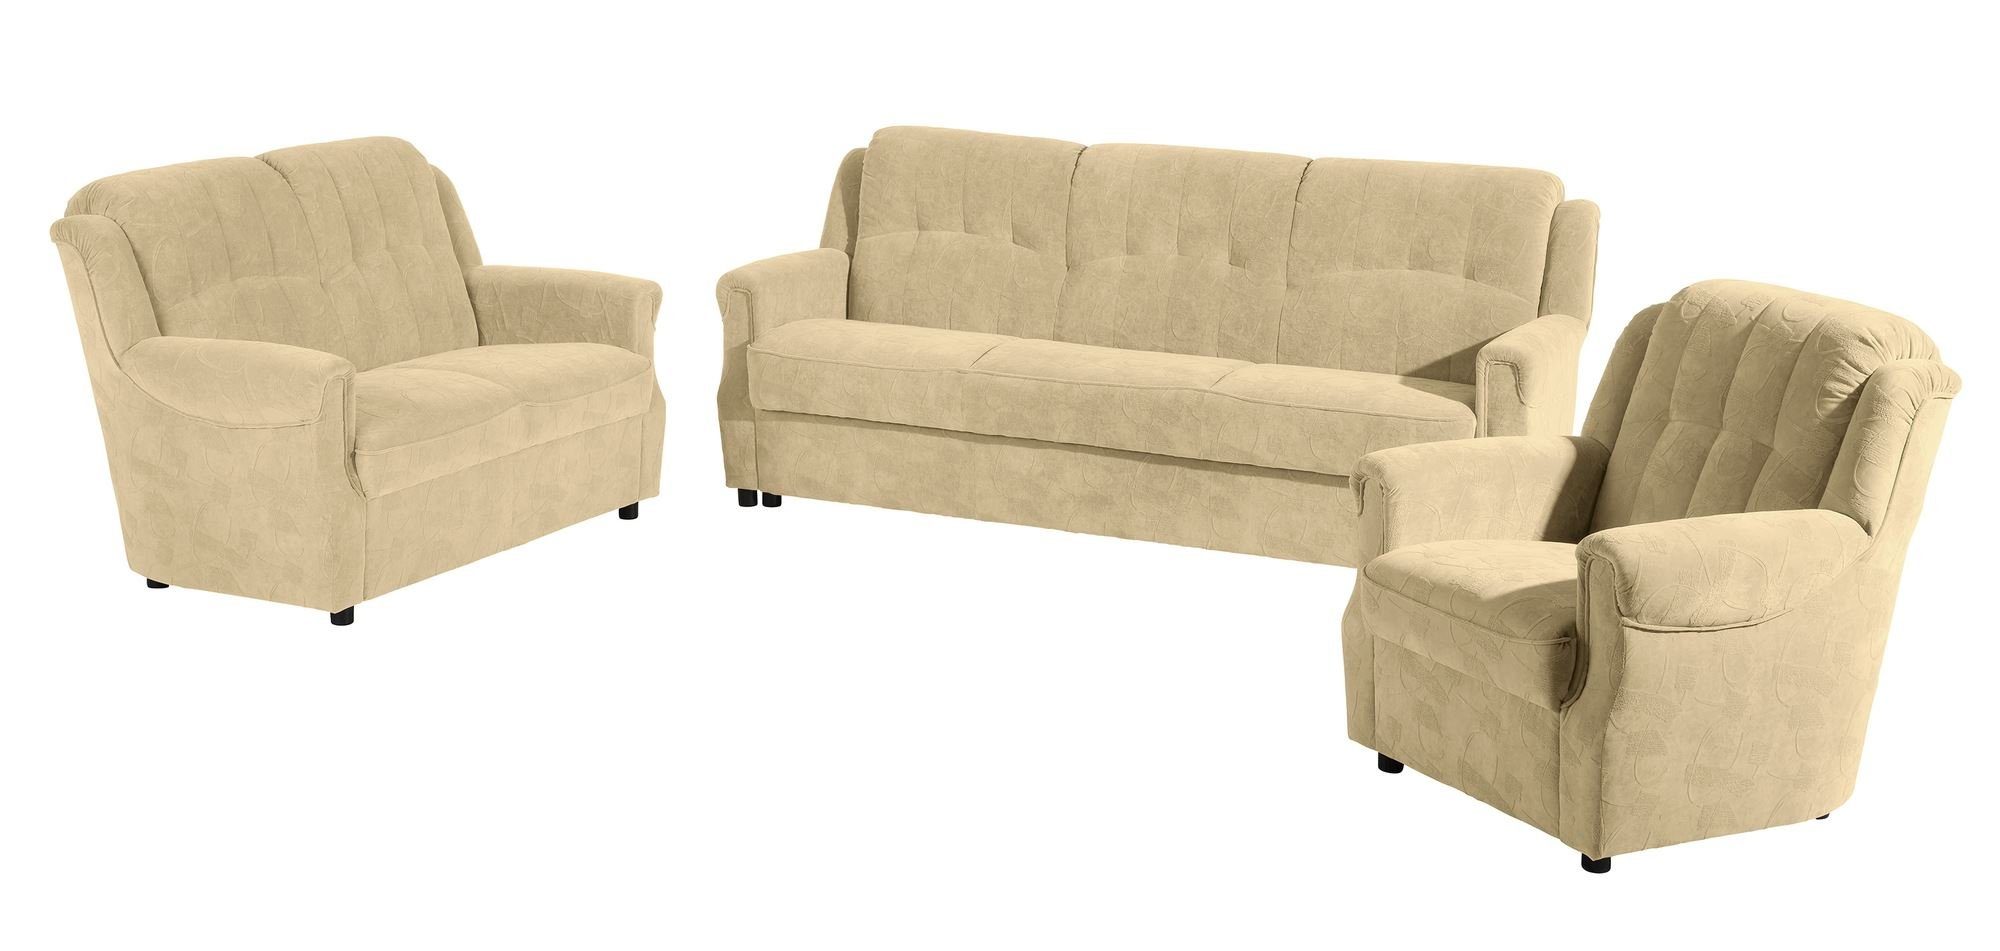 58 aufm Kessel Sofa Sofa 3-Sitzer mit Bettfunktion Karuna Bezug Microf, Sparpreis inkl. Kostenlosem Versand 1 Teile, hochwertig verarbeitet,bequemer Sitz